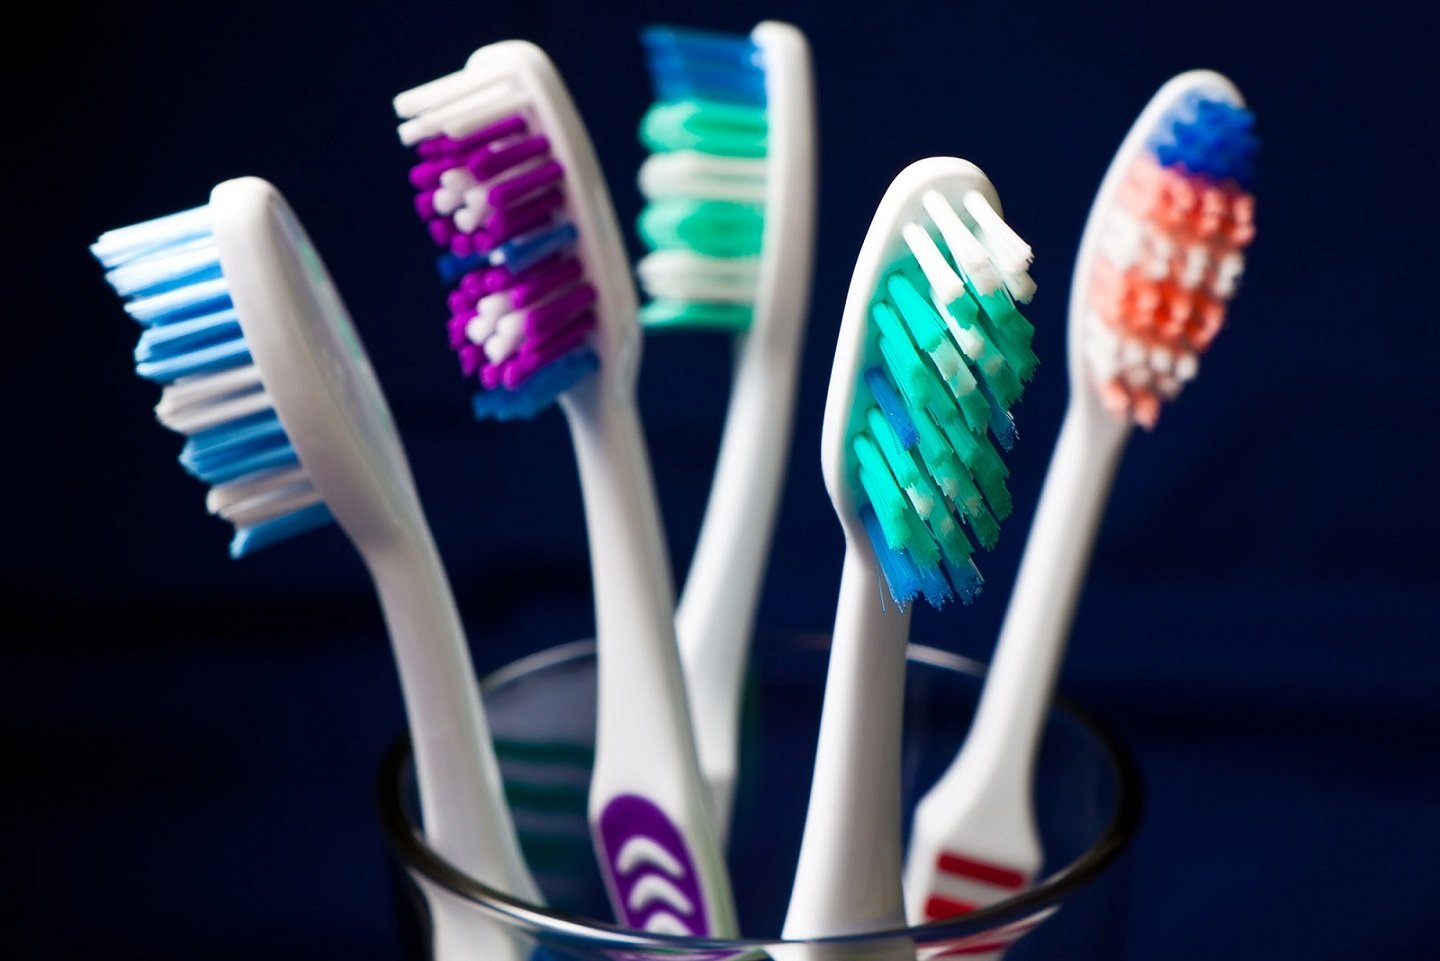 Як часто треба міняти зубну щітку: думки і рекомендації стоматологів